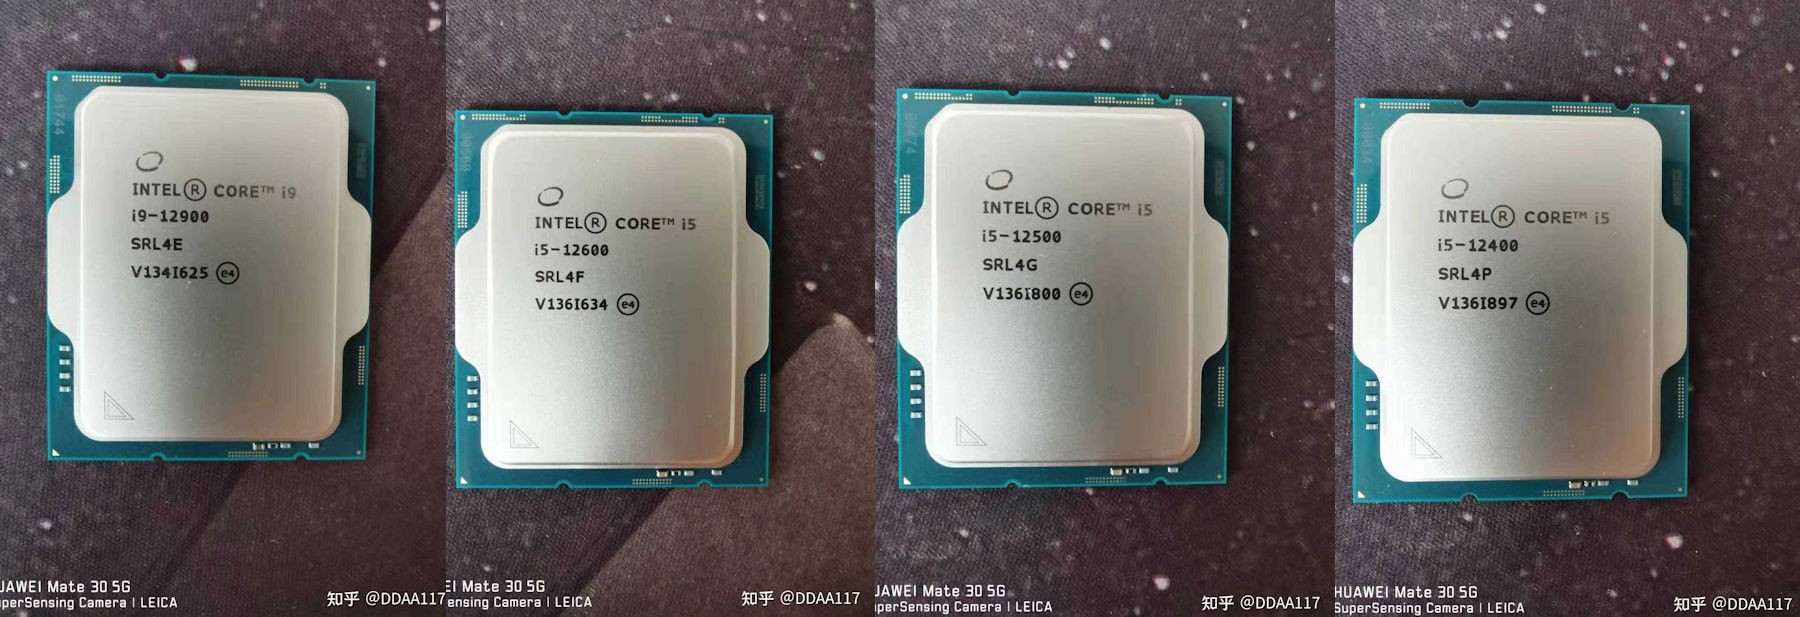 تسريب : سلسلة معالجات Intel 12th Gen Core non-K تحصل على بعض الصور